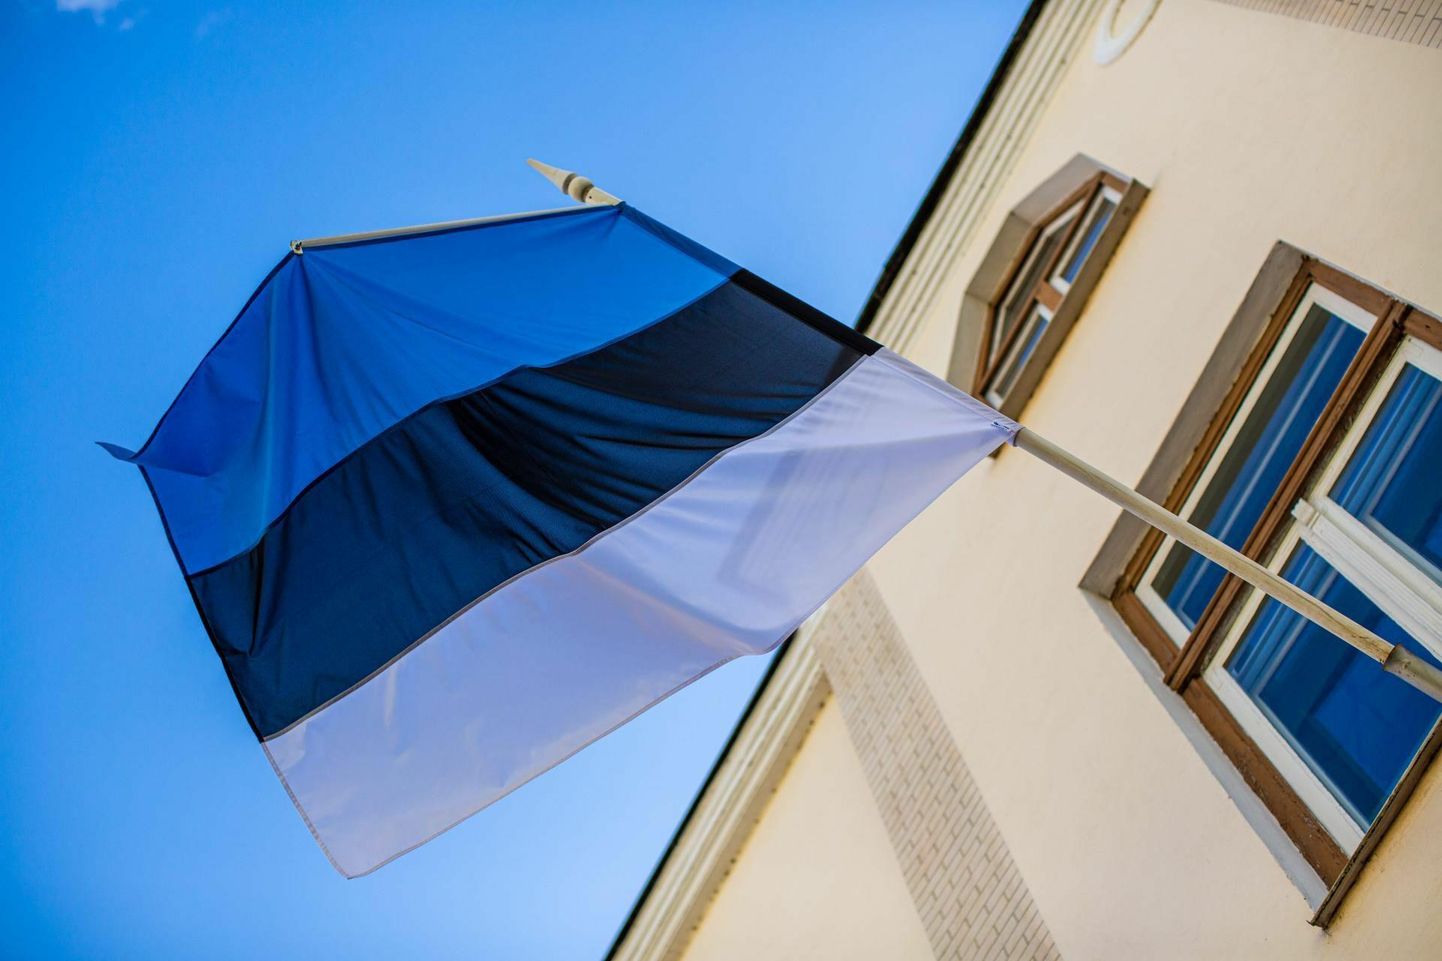 Eestis on edaspidi lipupäevad ka 30. jaanuar kui eesti kirjanduse päev ning laulu- ja tantsupeo päevad. 